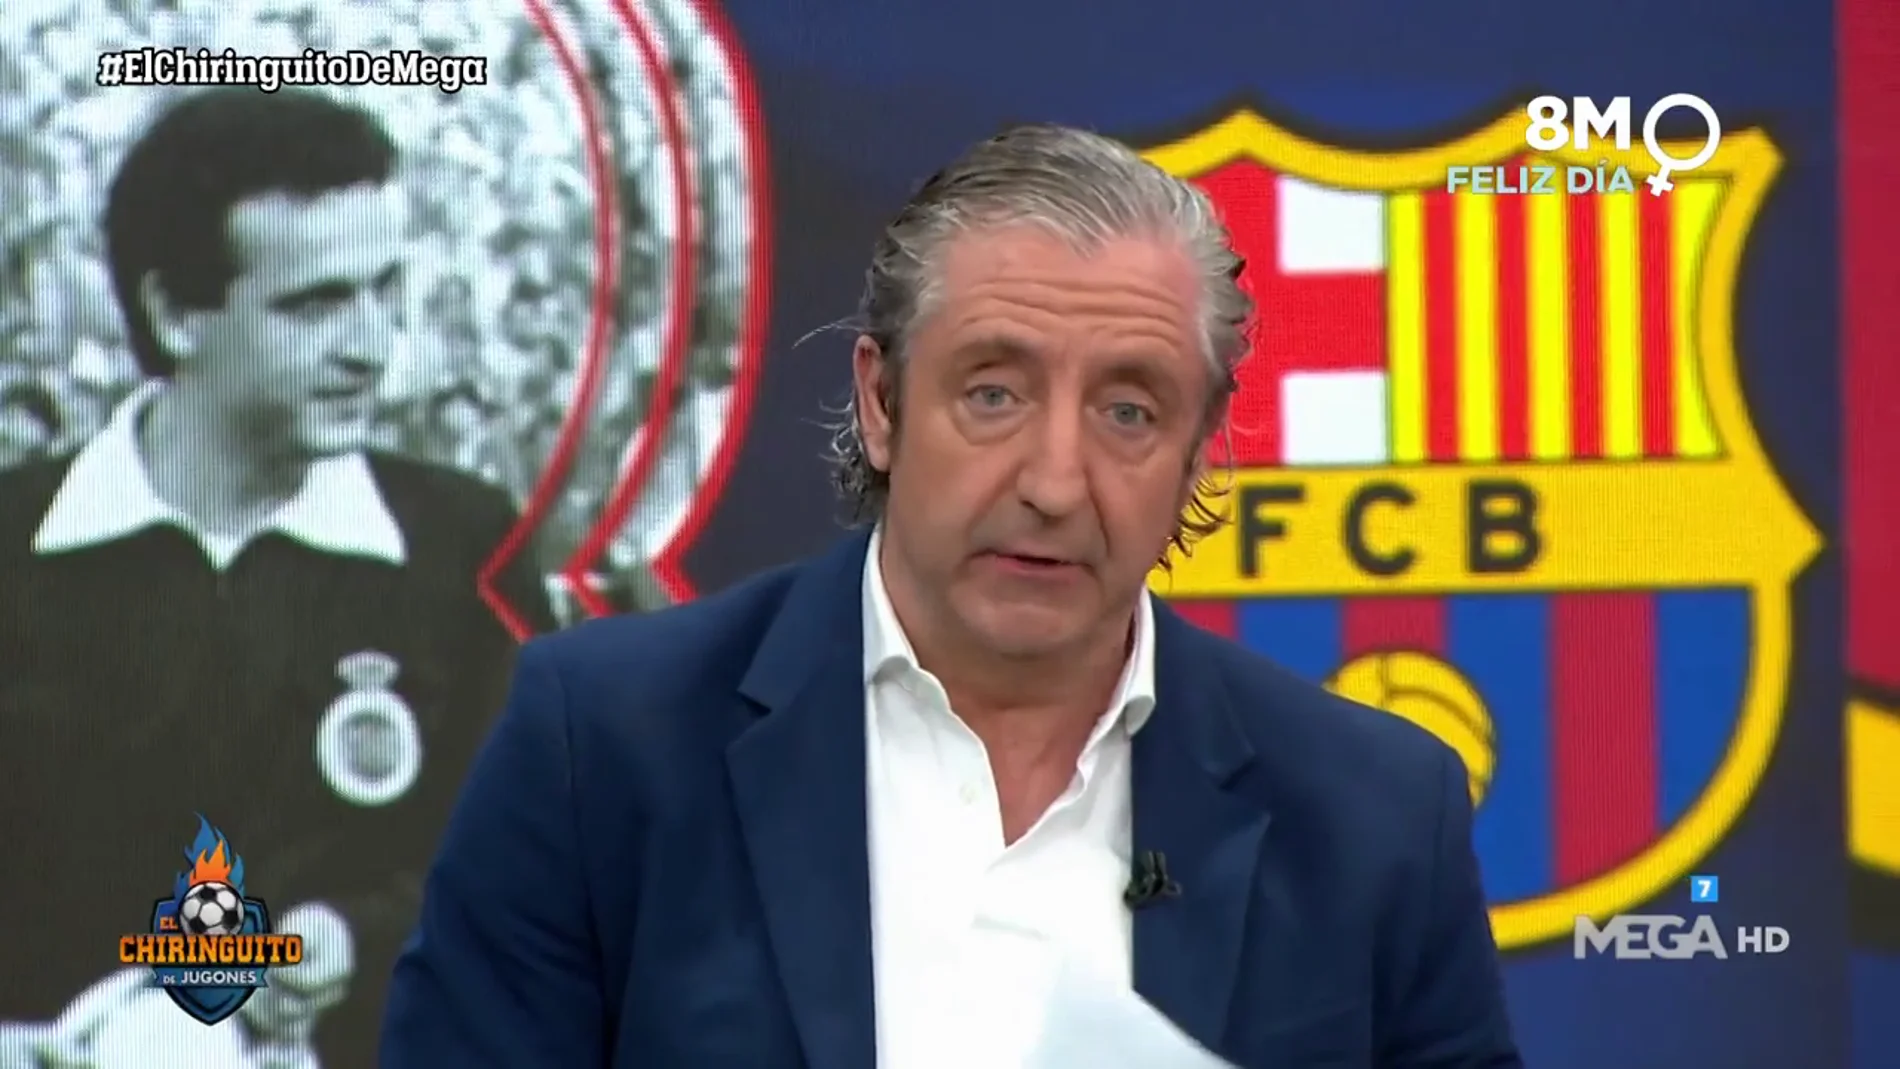 La fiscalía denunciará al Barça por corrupción y administración desleal